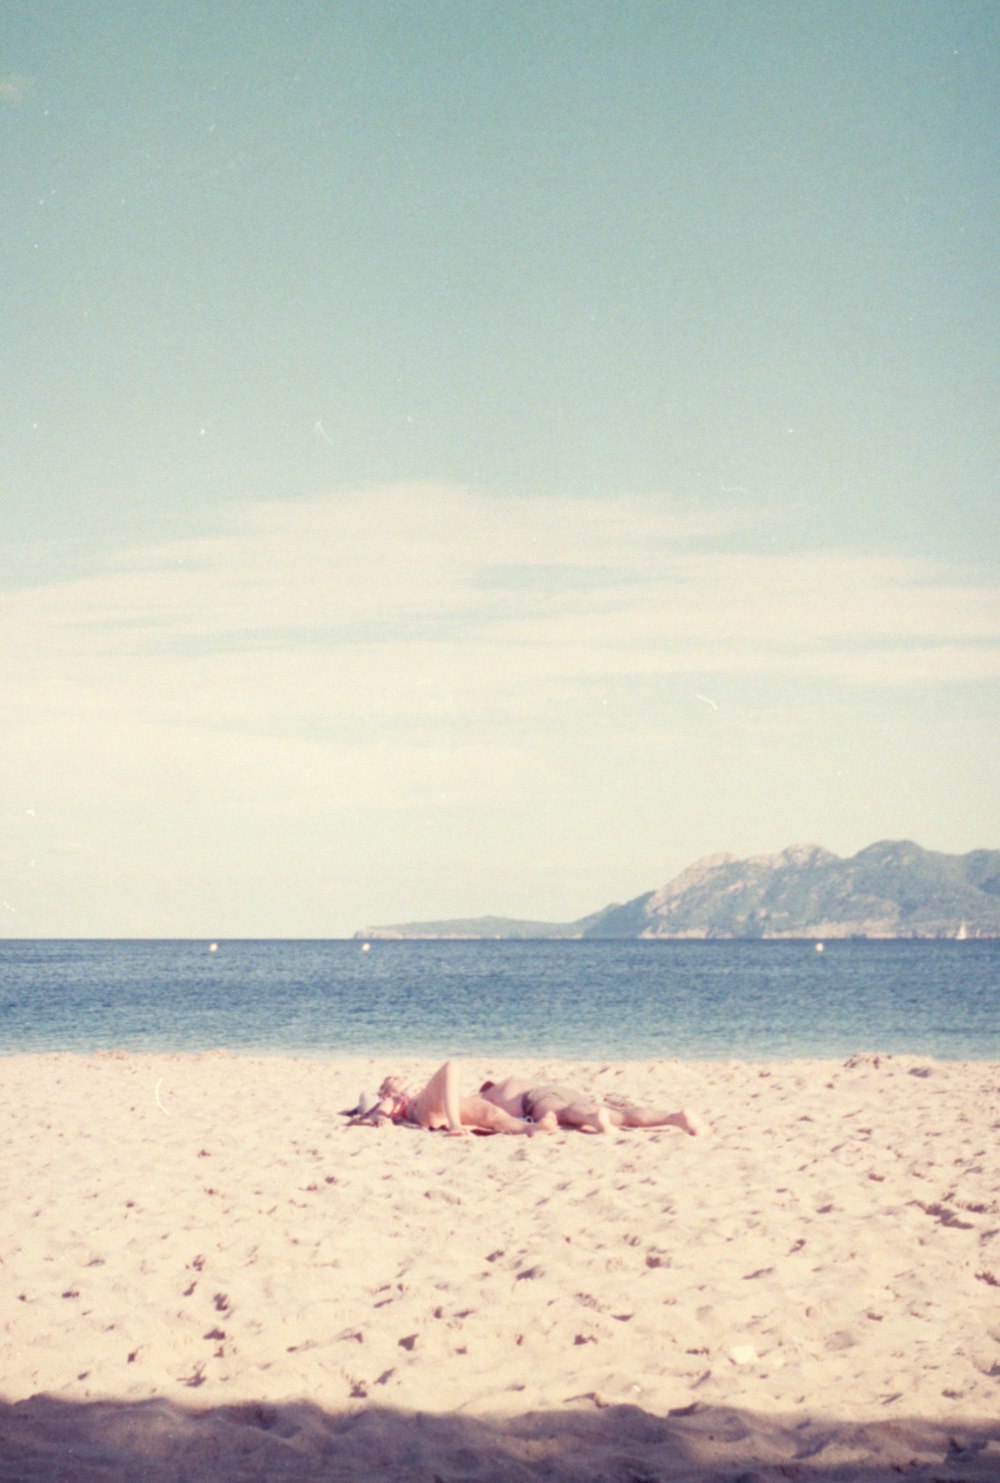 una persona sdraiata su una spiaggia con una tavola da surf